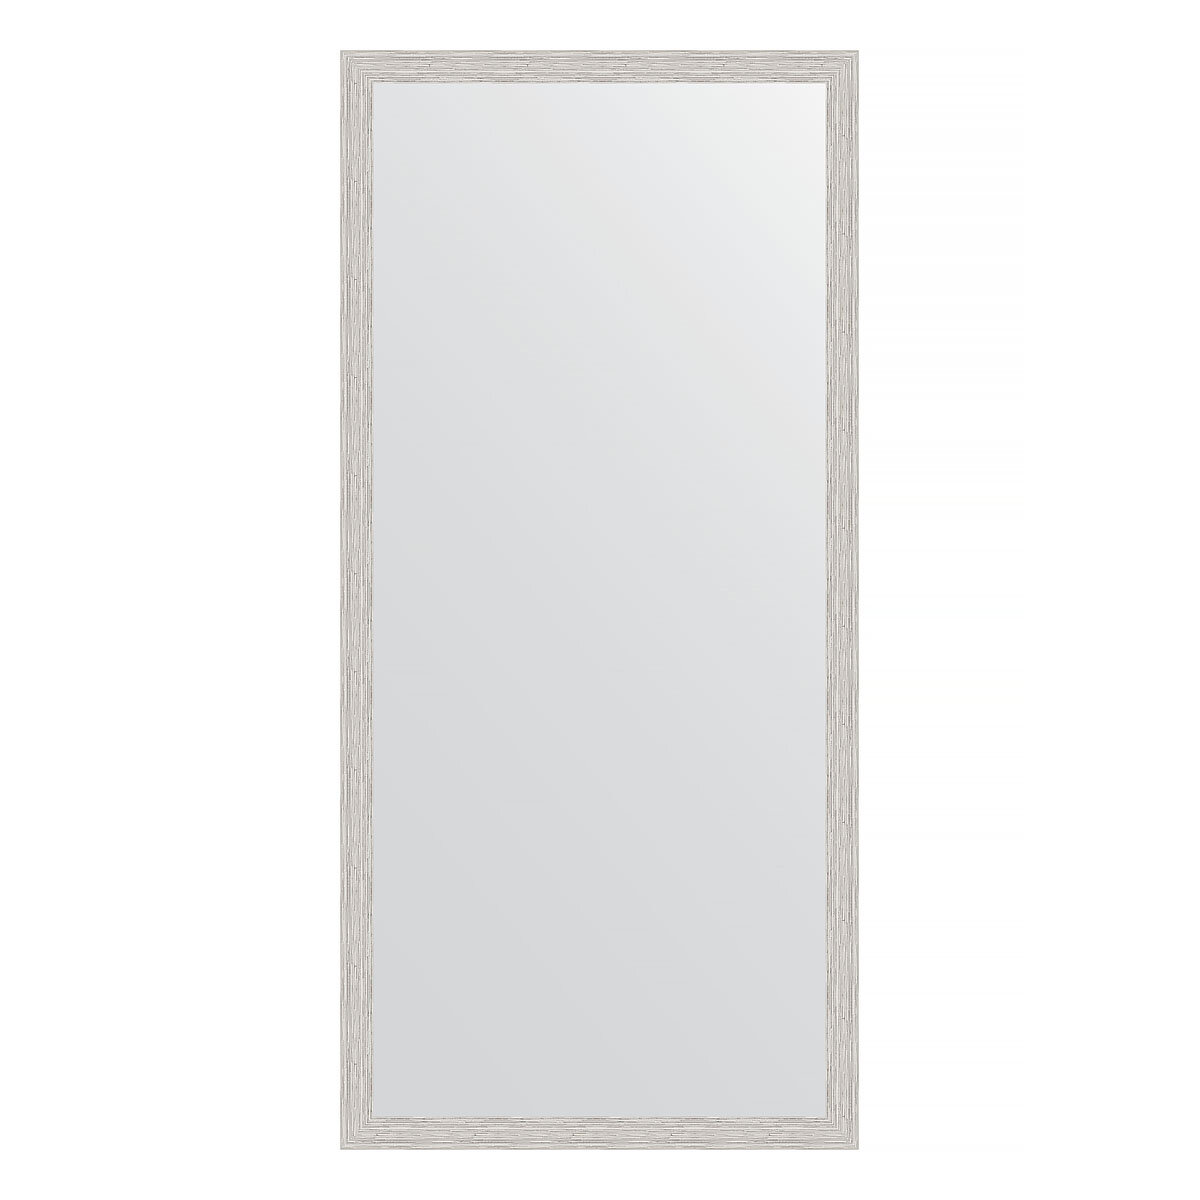 Зеркало настенное EVOFORM в багетной раме серебряный дождь, 71х151 см, для гостиной, прихожей, кабинета, спальни и ванной комнаты, BY 3325